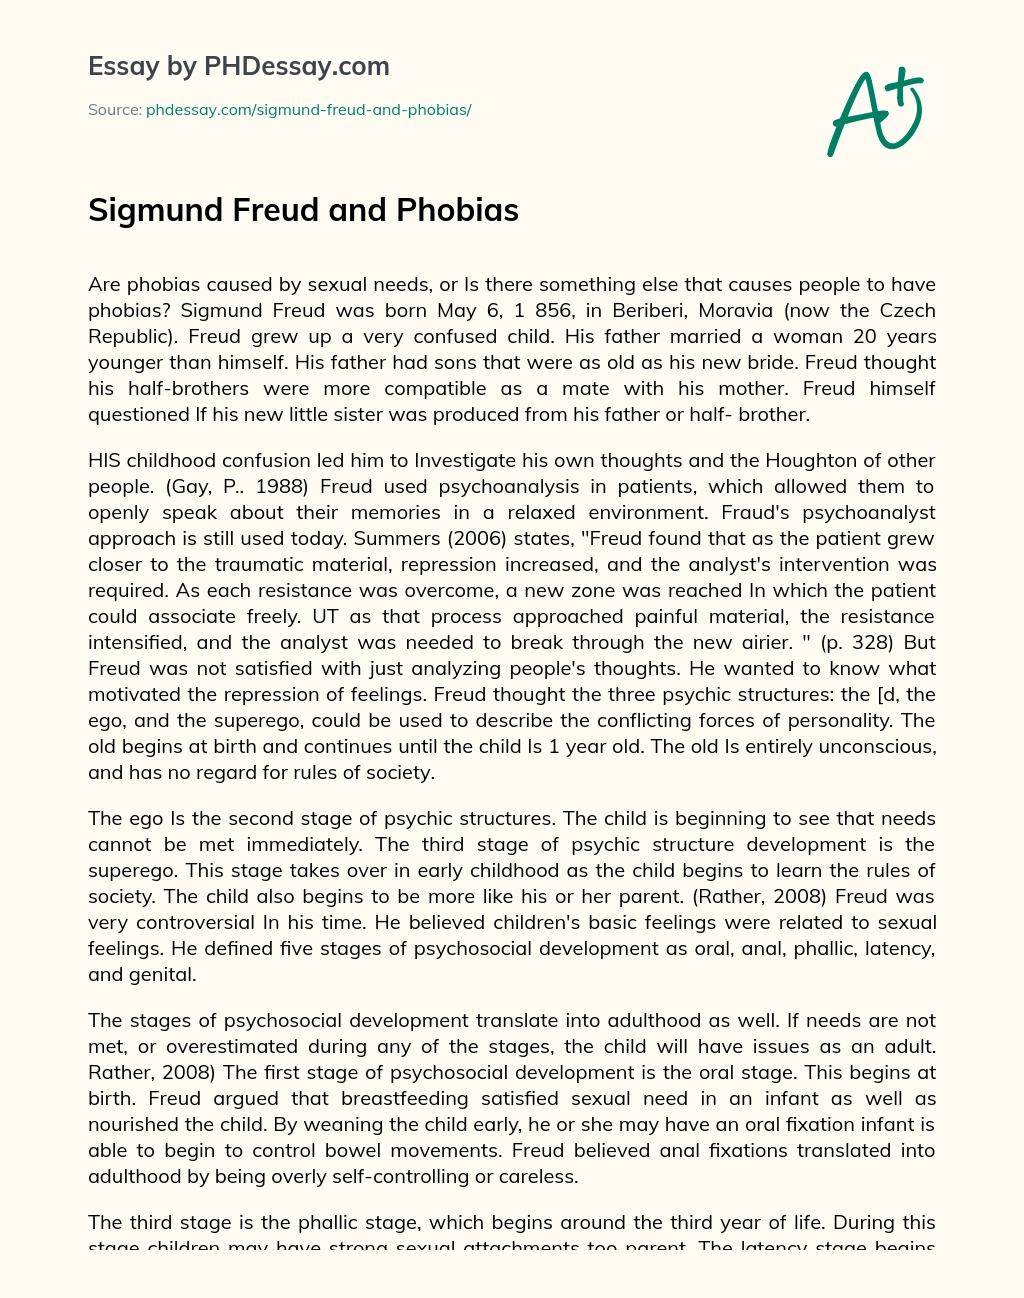 Sigmund Freud and Phobias essay